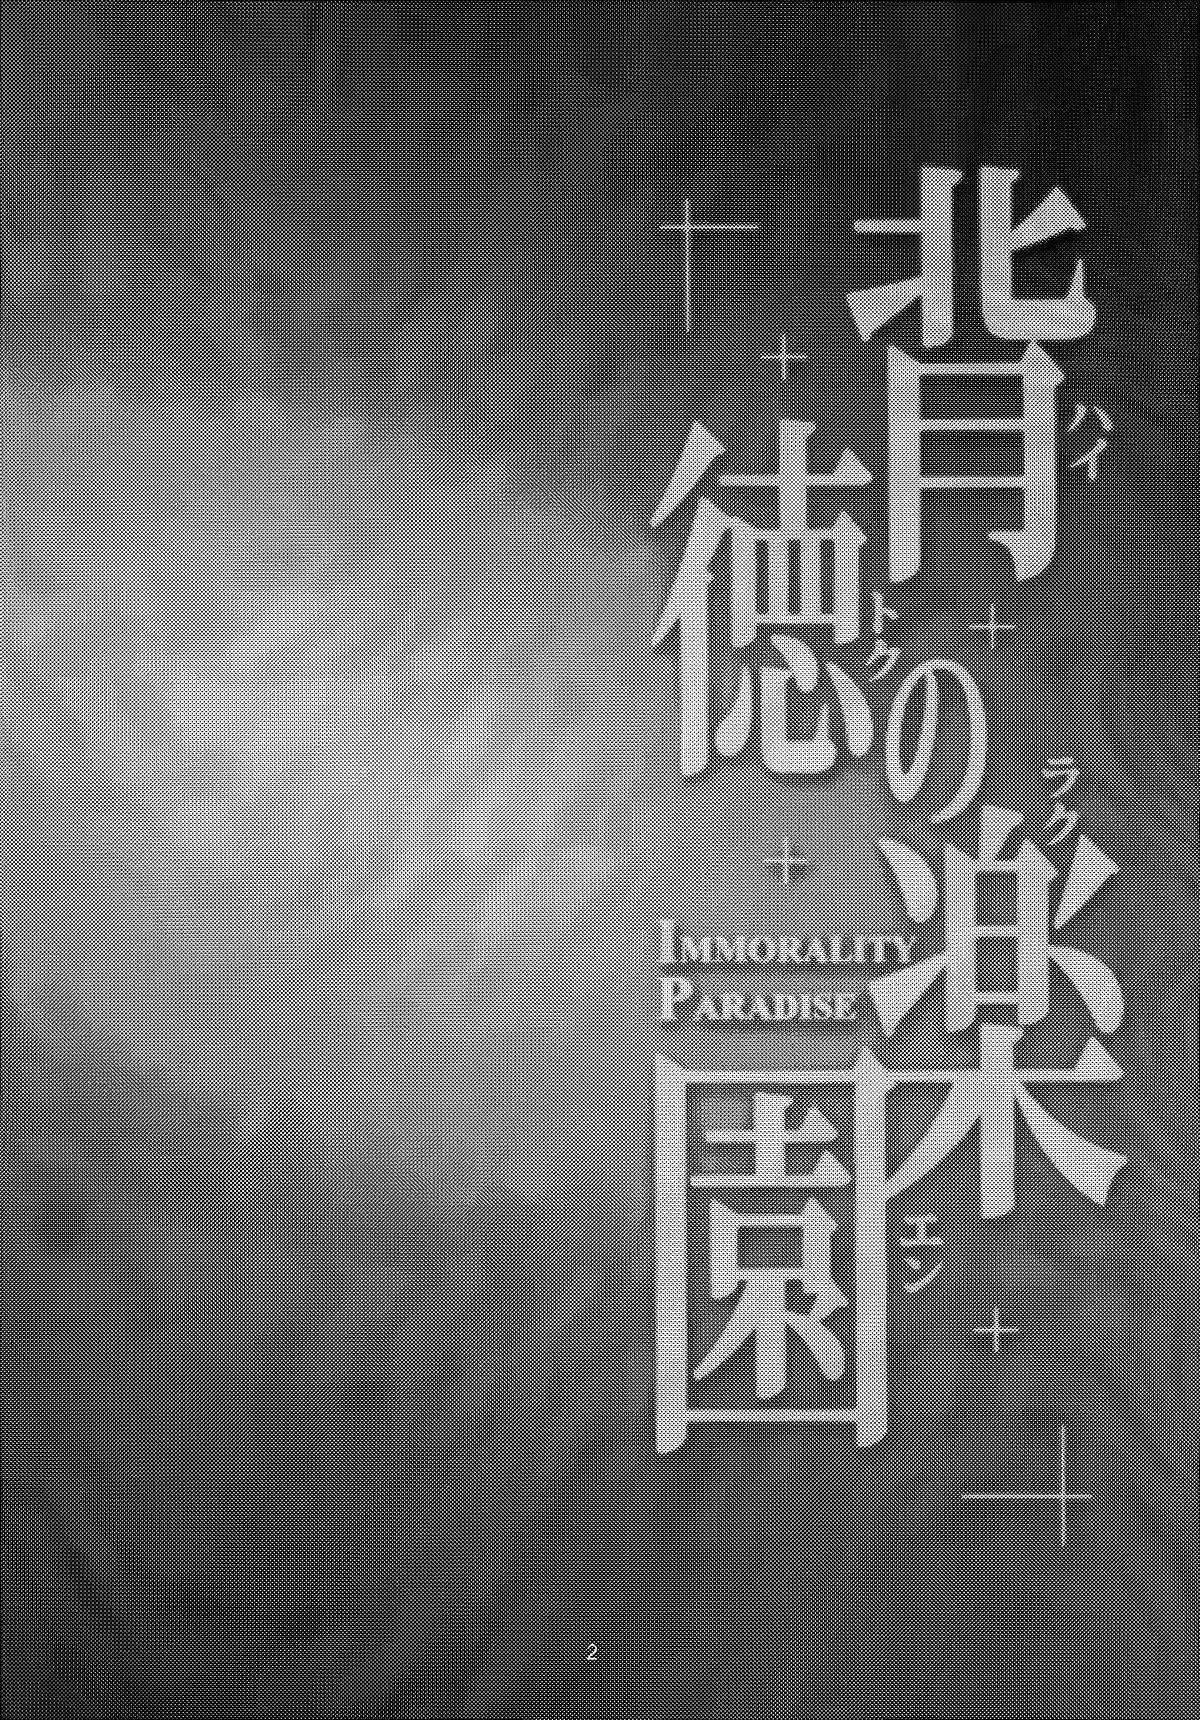 Haitoku no Rakuen - Immorality Paradise 4